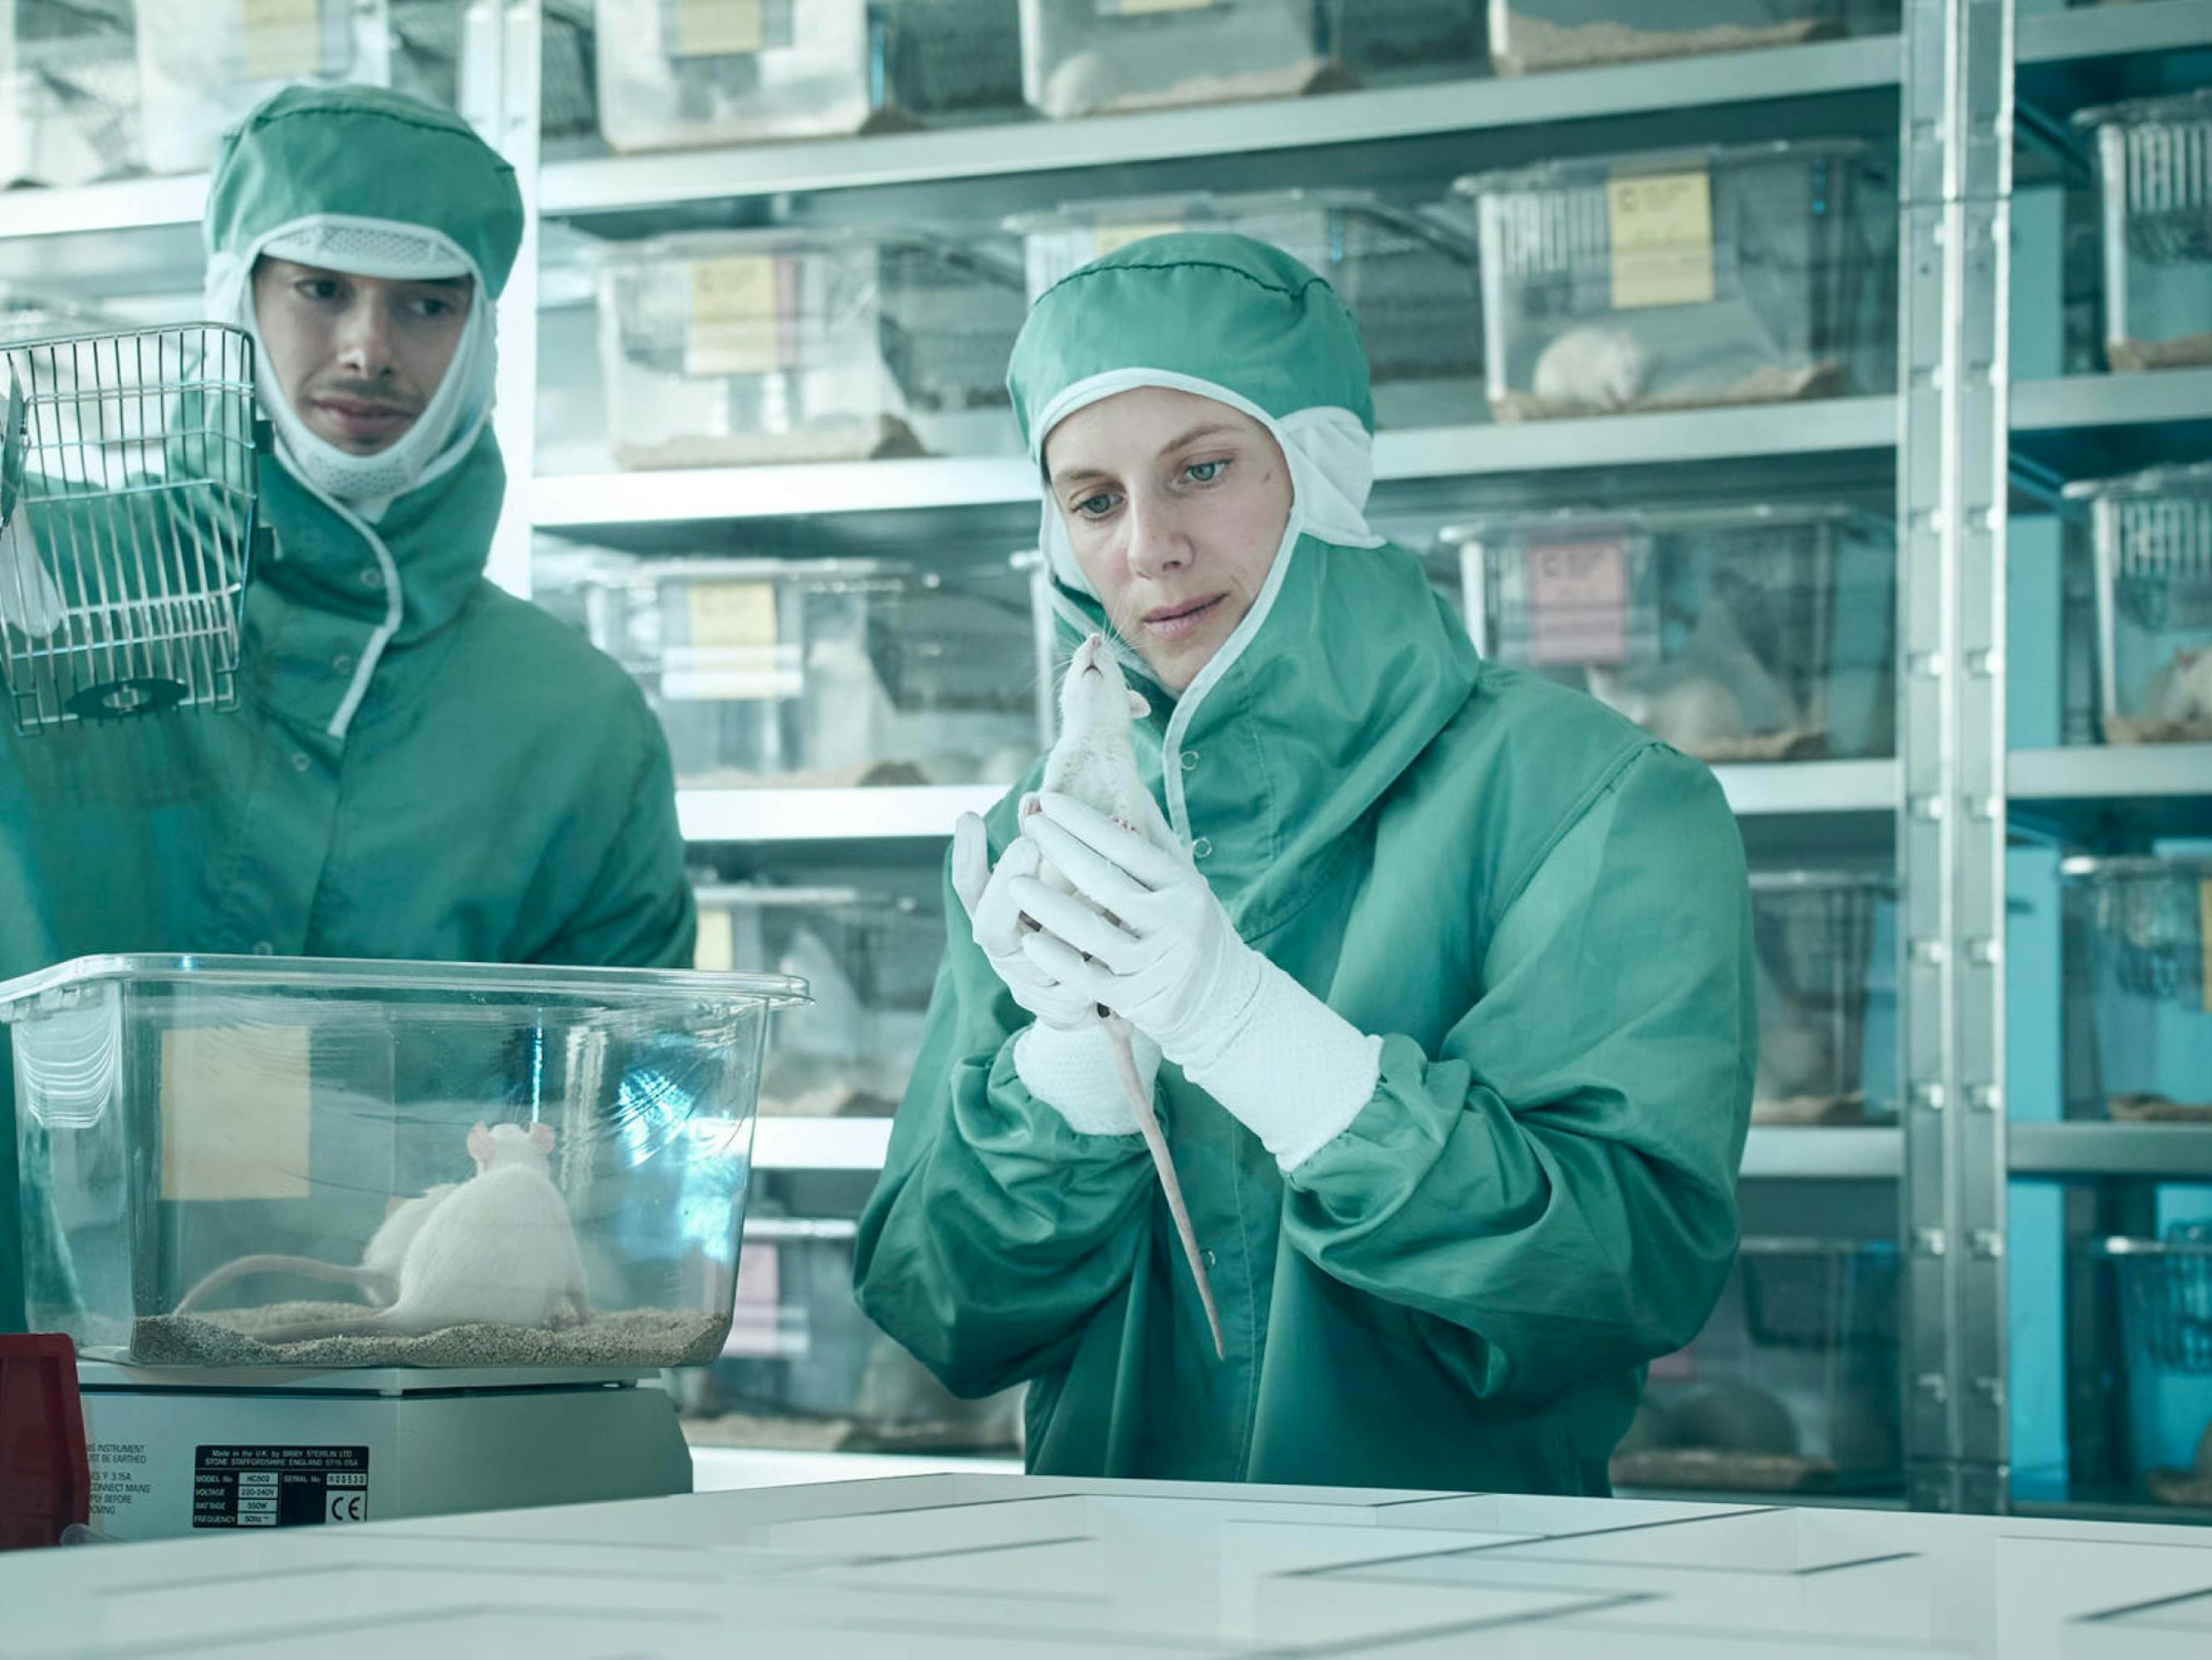 Dans une scène évoquant un flash-back, en raison de l’éclairage, Mélanie Laurent et un homme se trouvent dans un laboratoire, portant tous les deux une combinaison de protection intégrale de couleur verte. Elle tient une souris à la main, et on aperçoit à sa droite et derrière elle, plusieurs boîtes transparentes contenant des souris blanches.